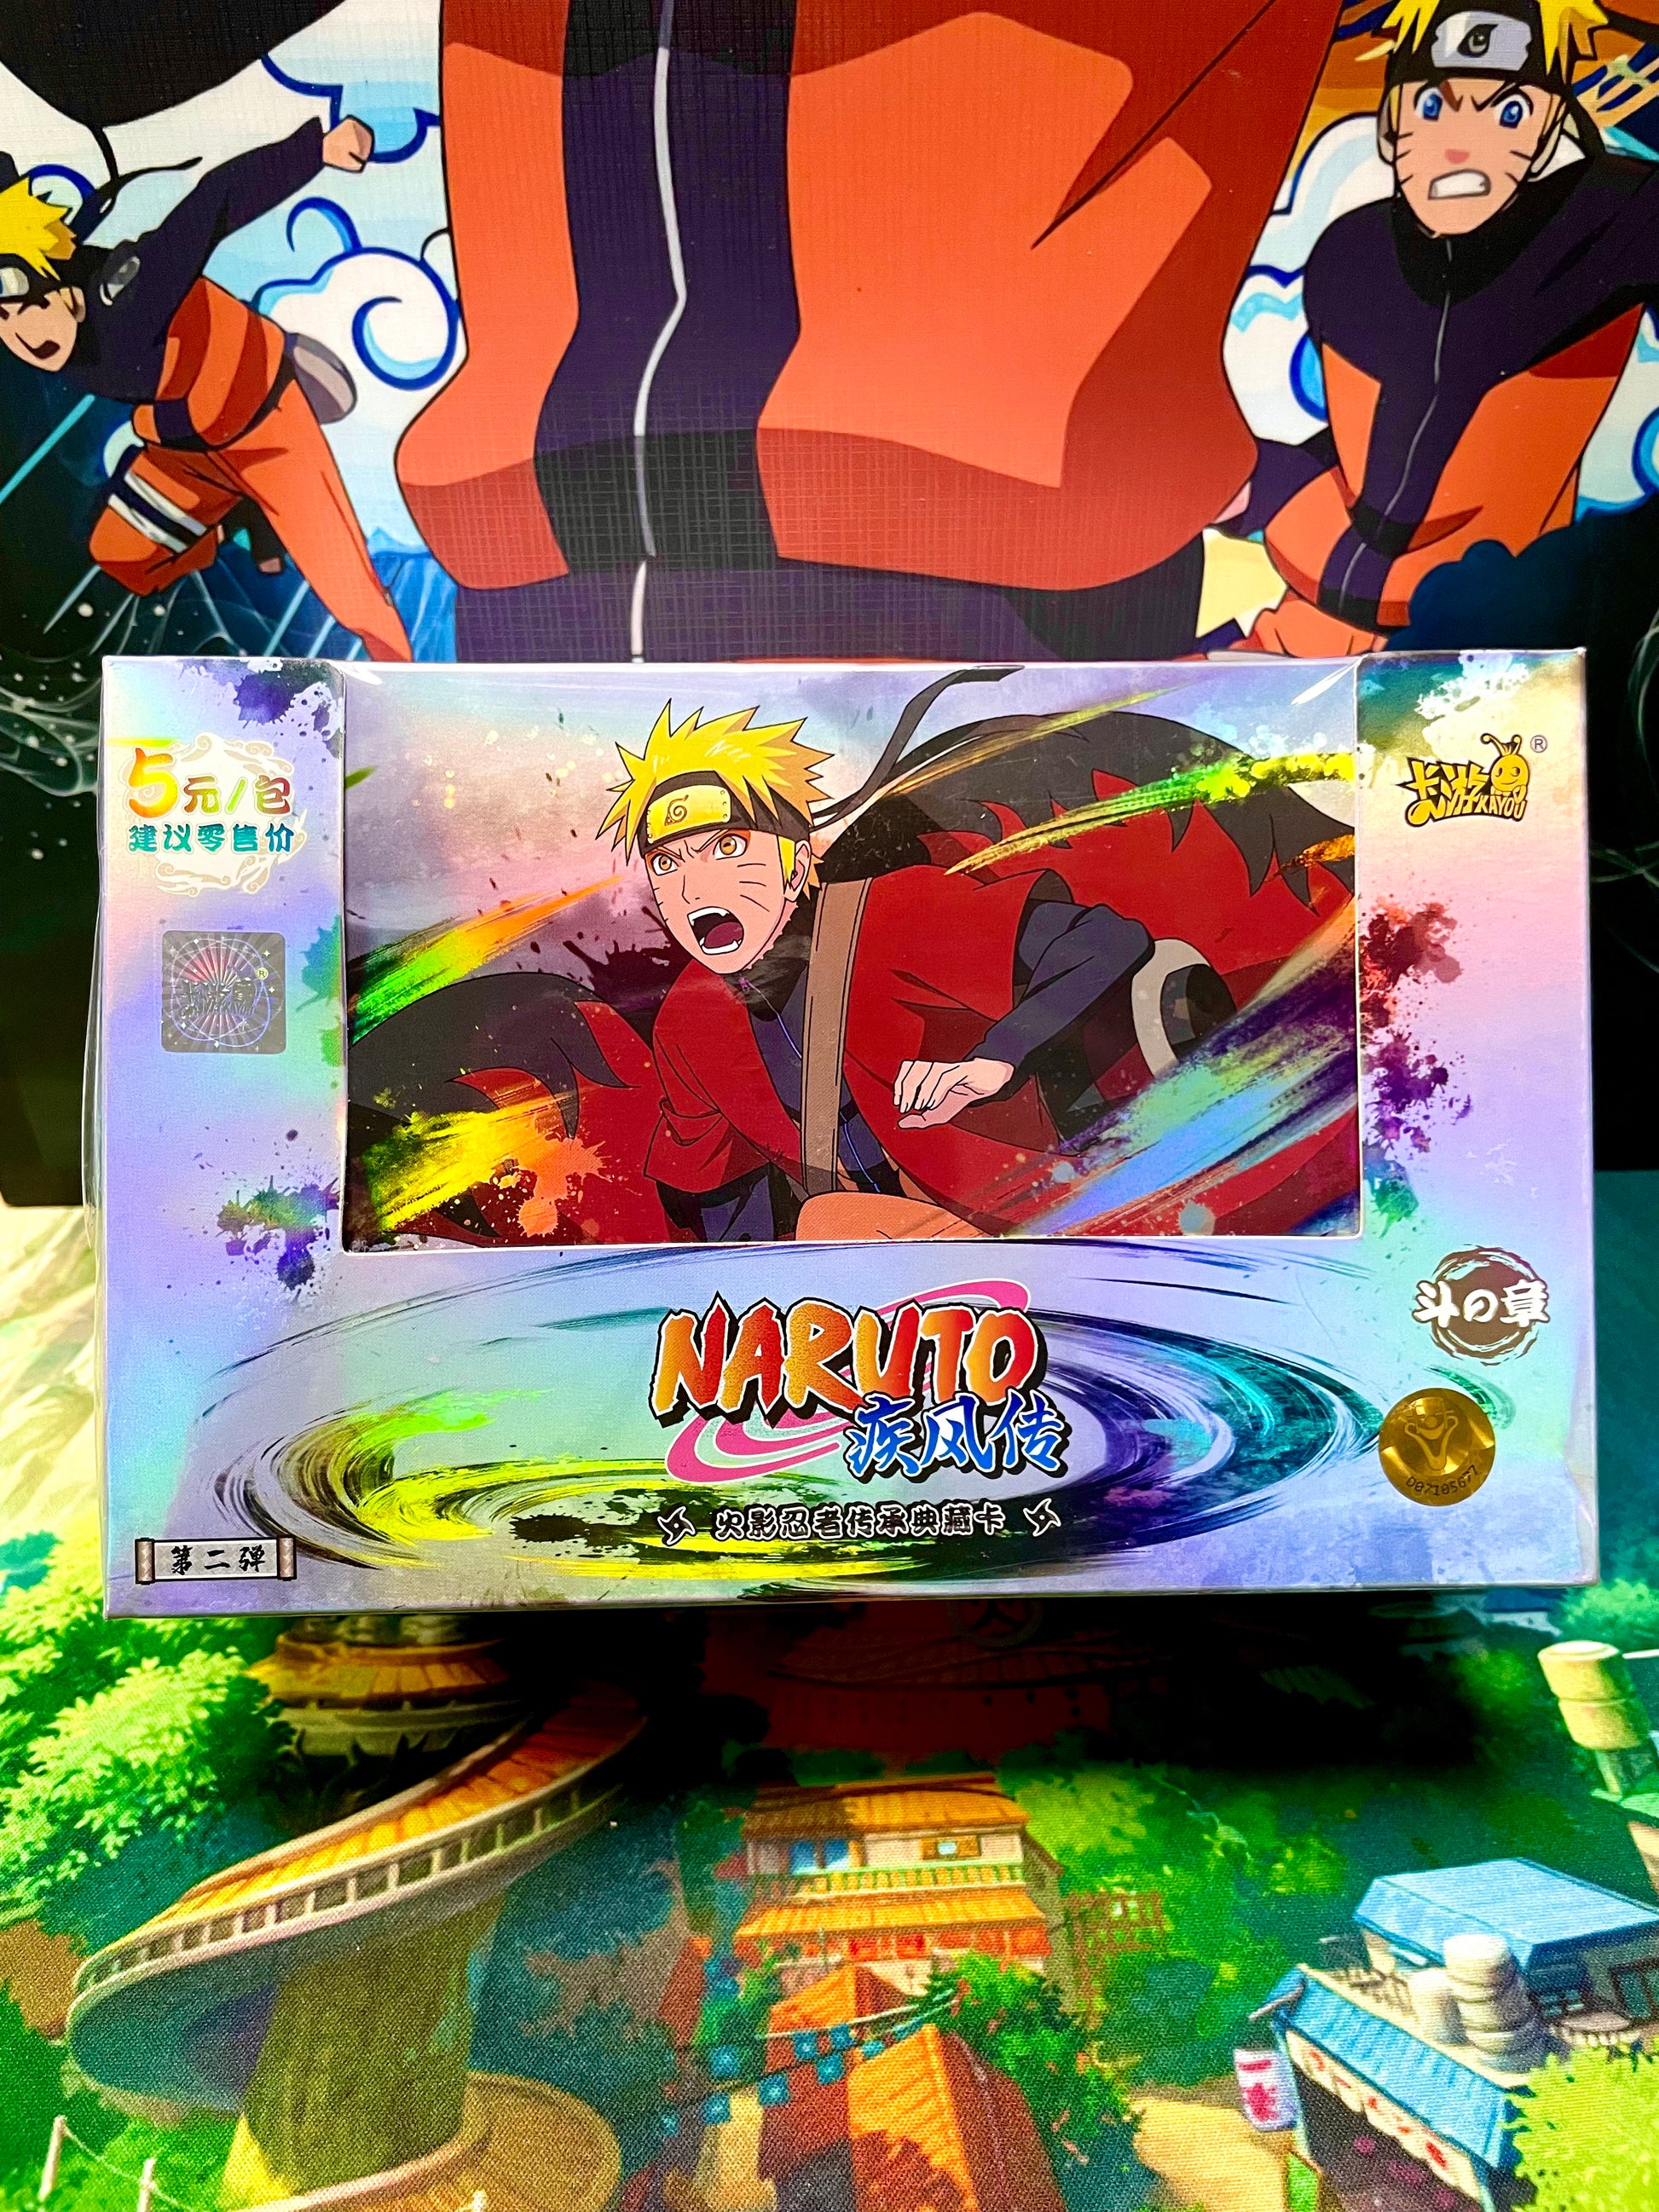 Display - Kayou Naruto Cards Booster Box Display Serials - TCG Naruto –  GRAND ANIME CARD